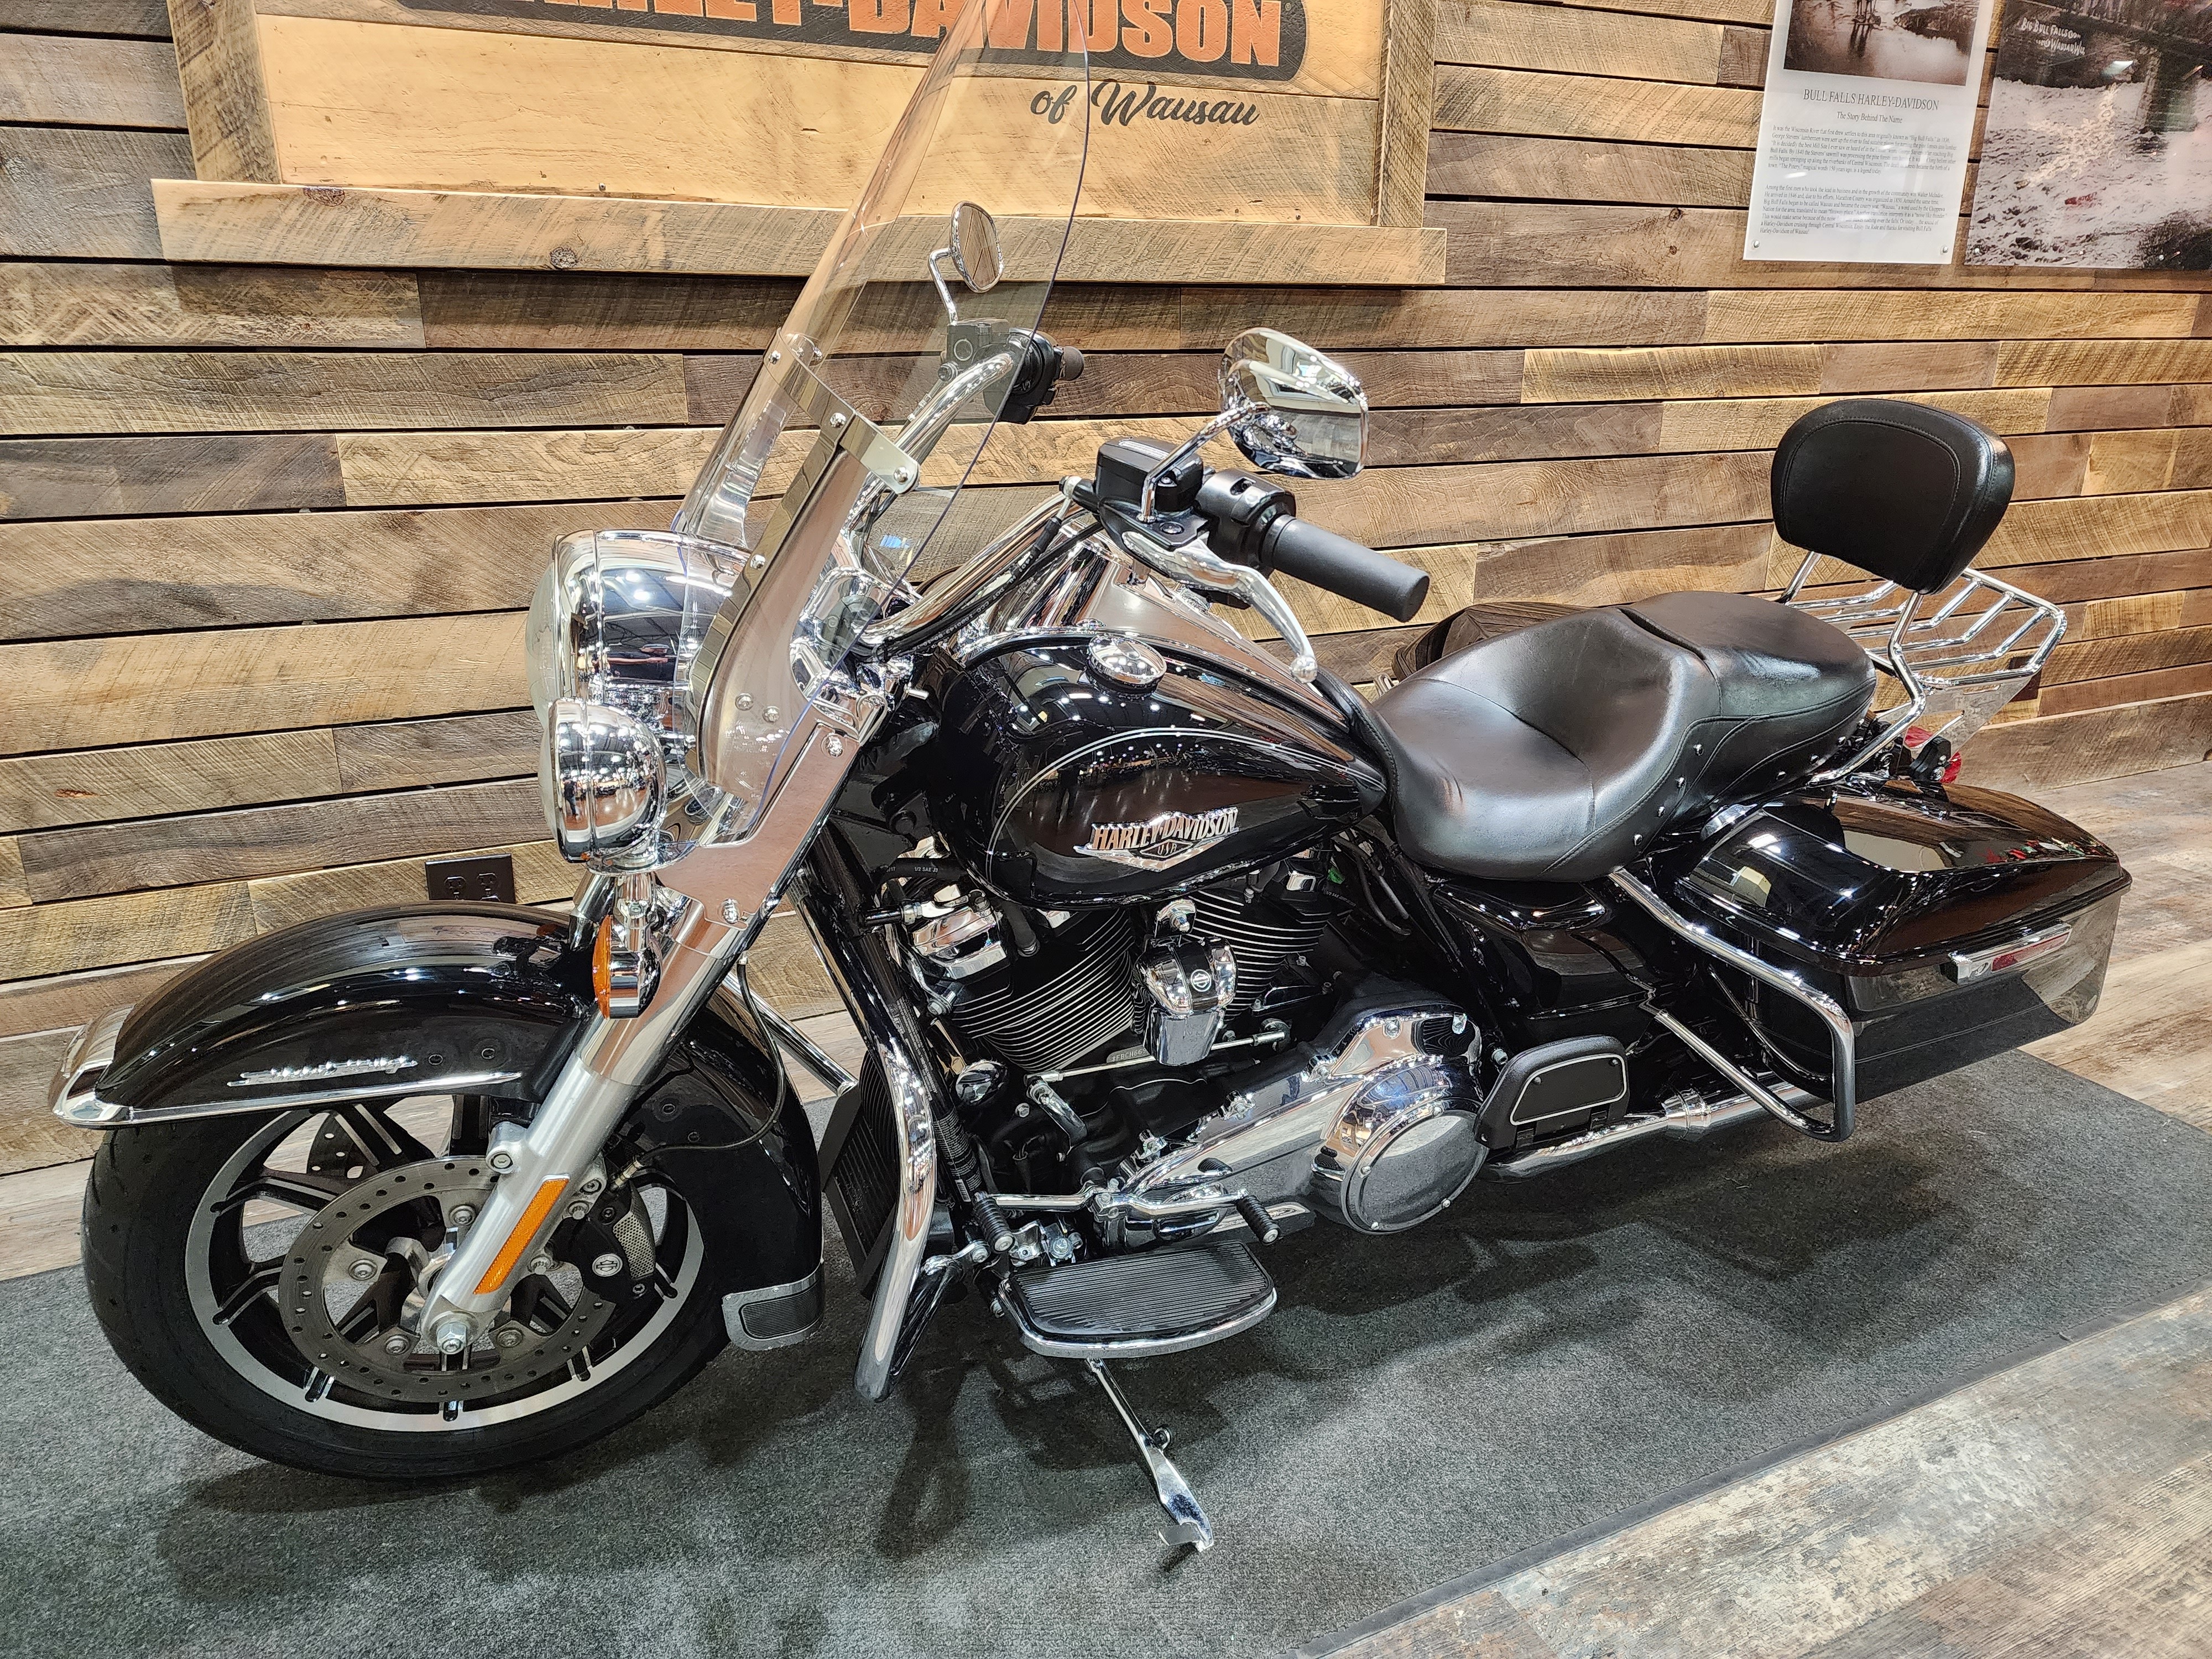 2017 Harley-Davidson Road King Base at Bull Falls Harley-Davidson